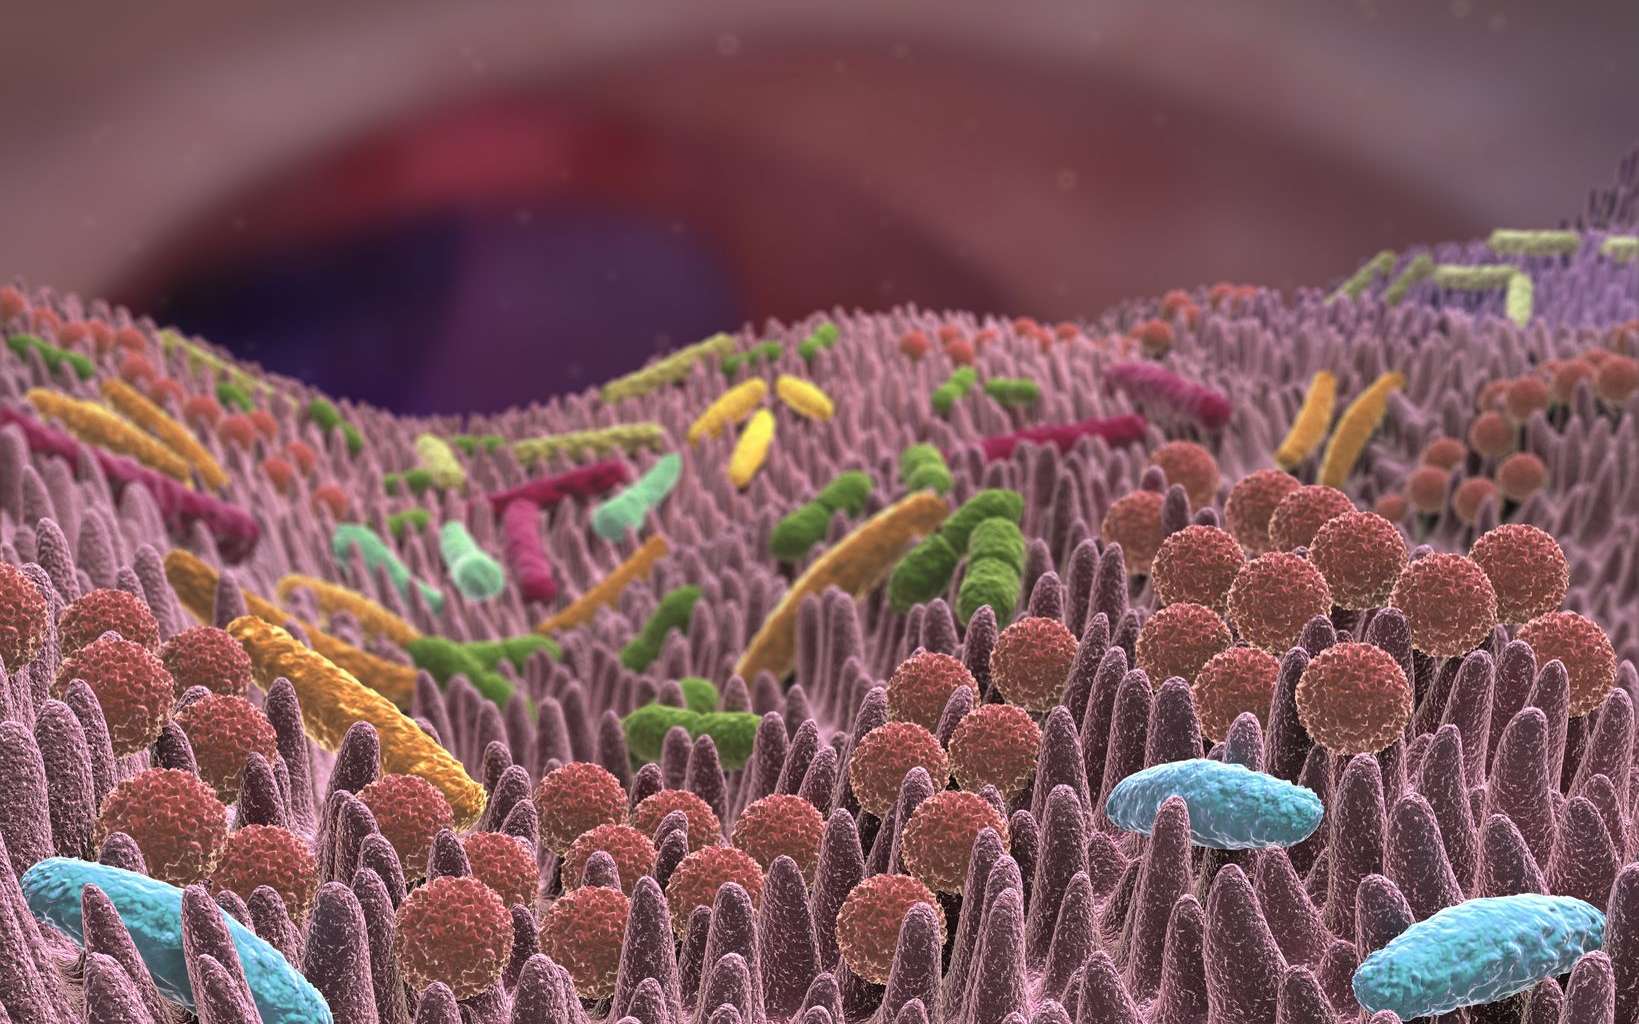 Maladies intestinales chroniques : un vaccin ciblant le microbiote pour les vaincre